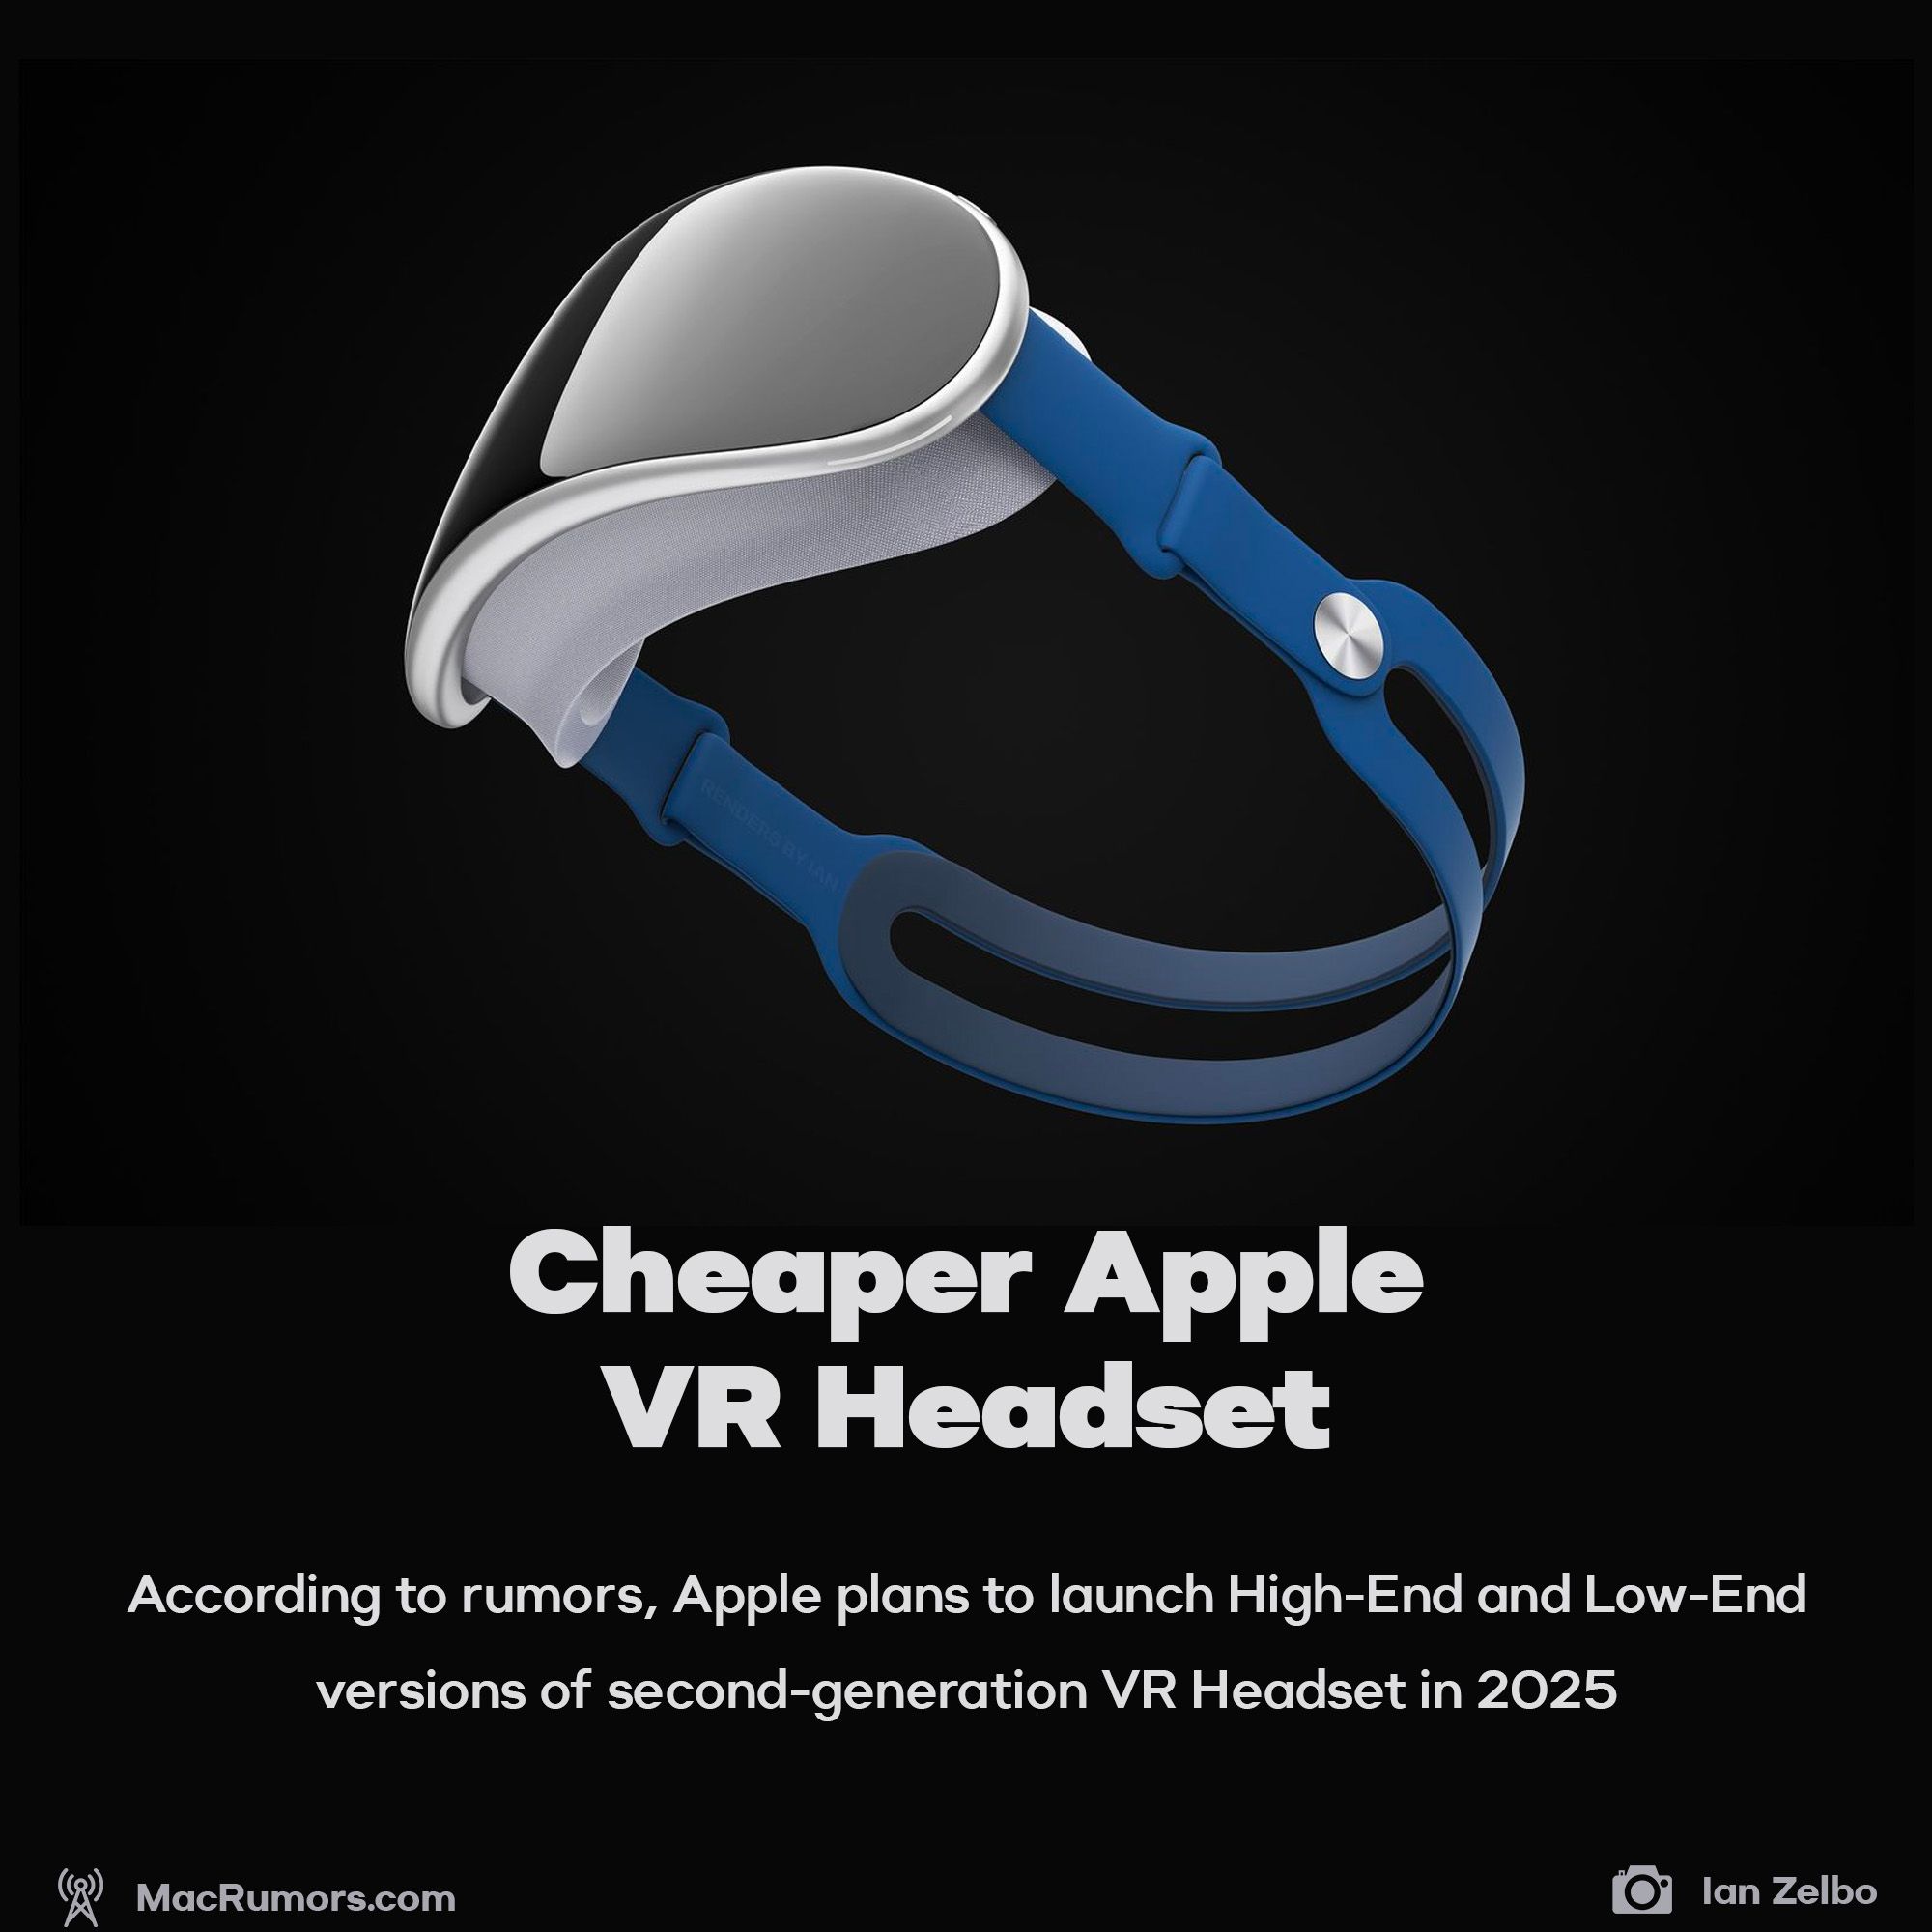 Cheaper Apple VR Headset in 2025